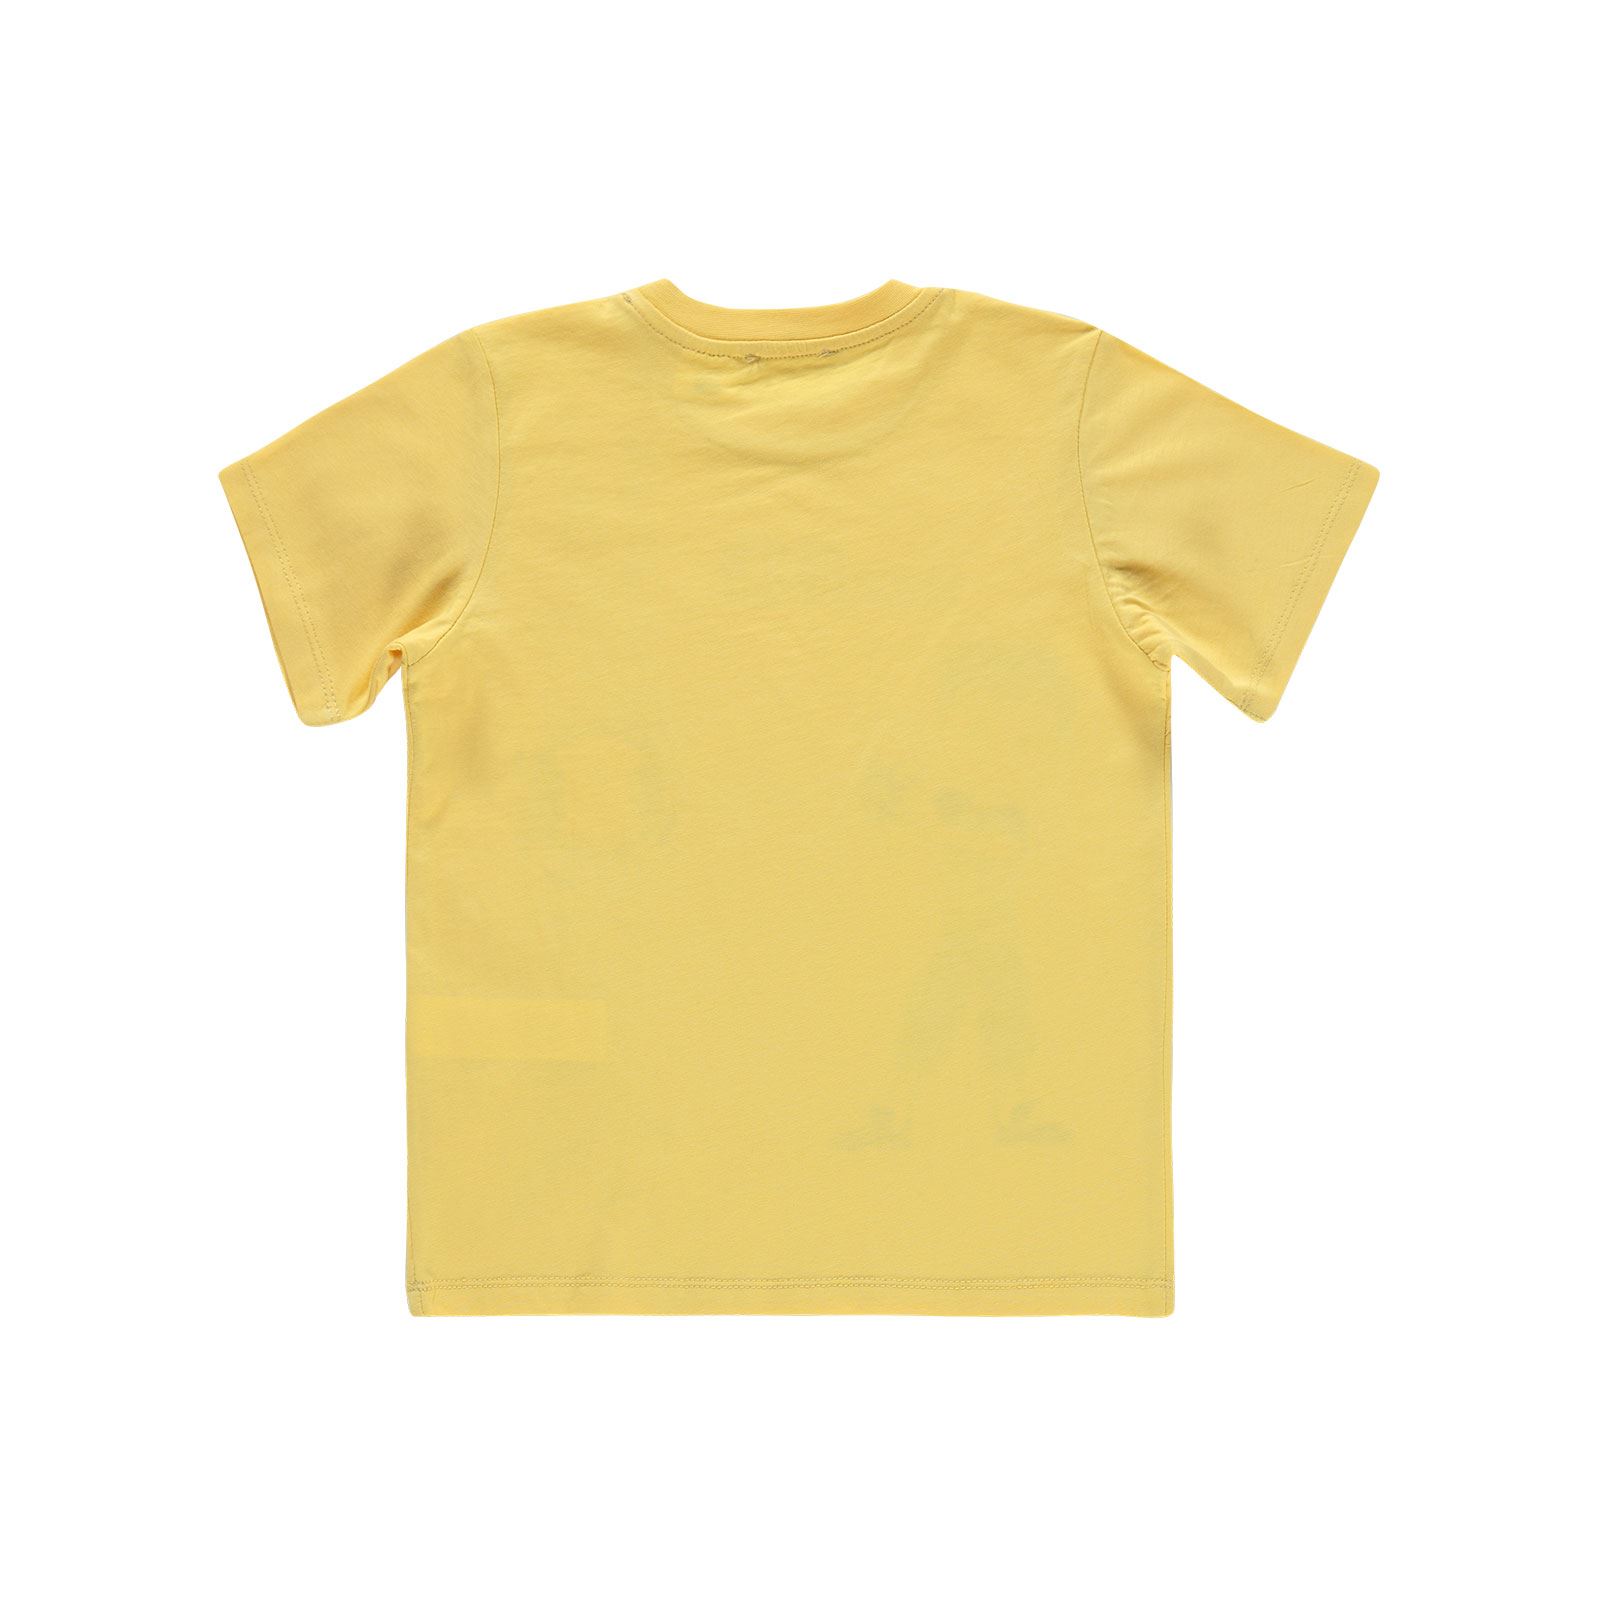 Ben10 Erkek Çocuk Tişört 6-9 Yaş Sarı